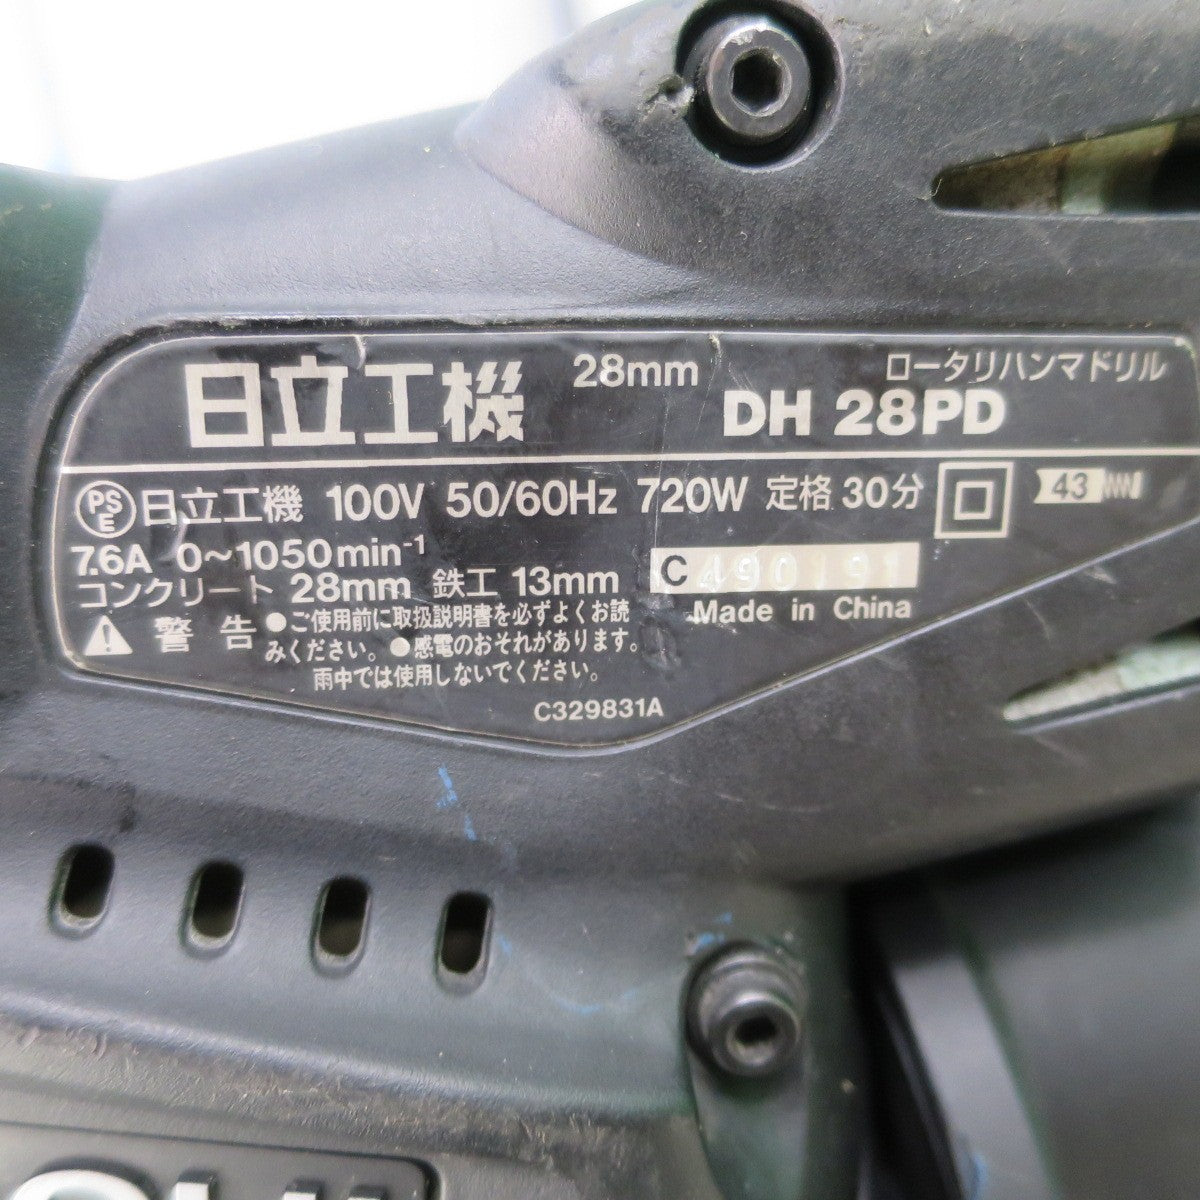 [送料無料] ☆日立 28mm ロータリ ハンマドリル DH28PD 電動 工具 ハンマードリル☆